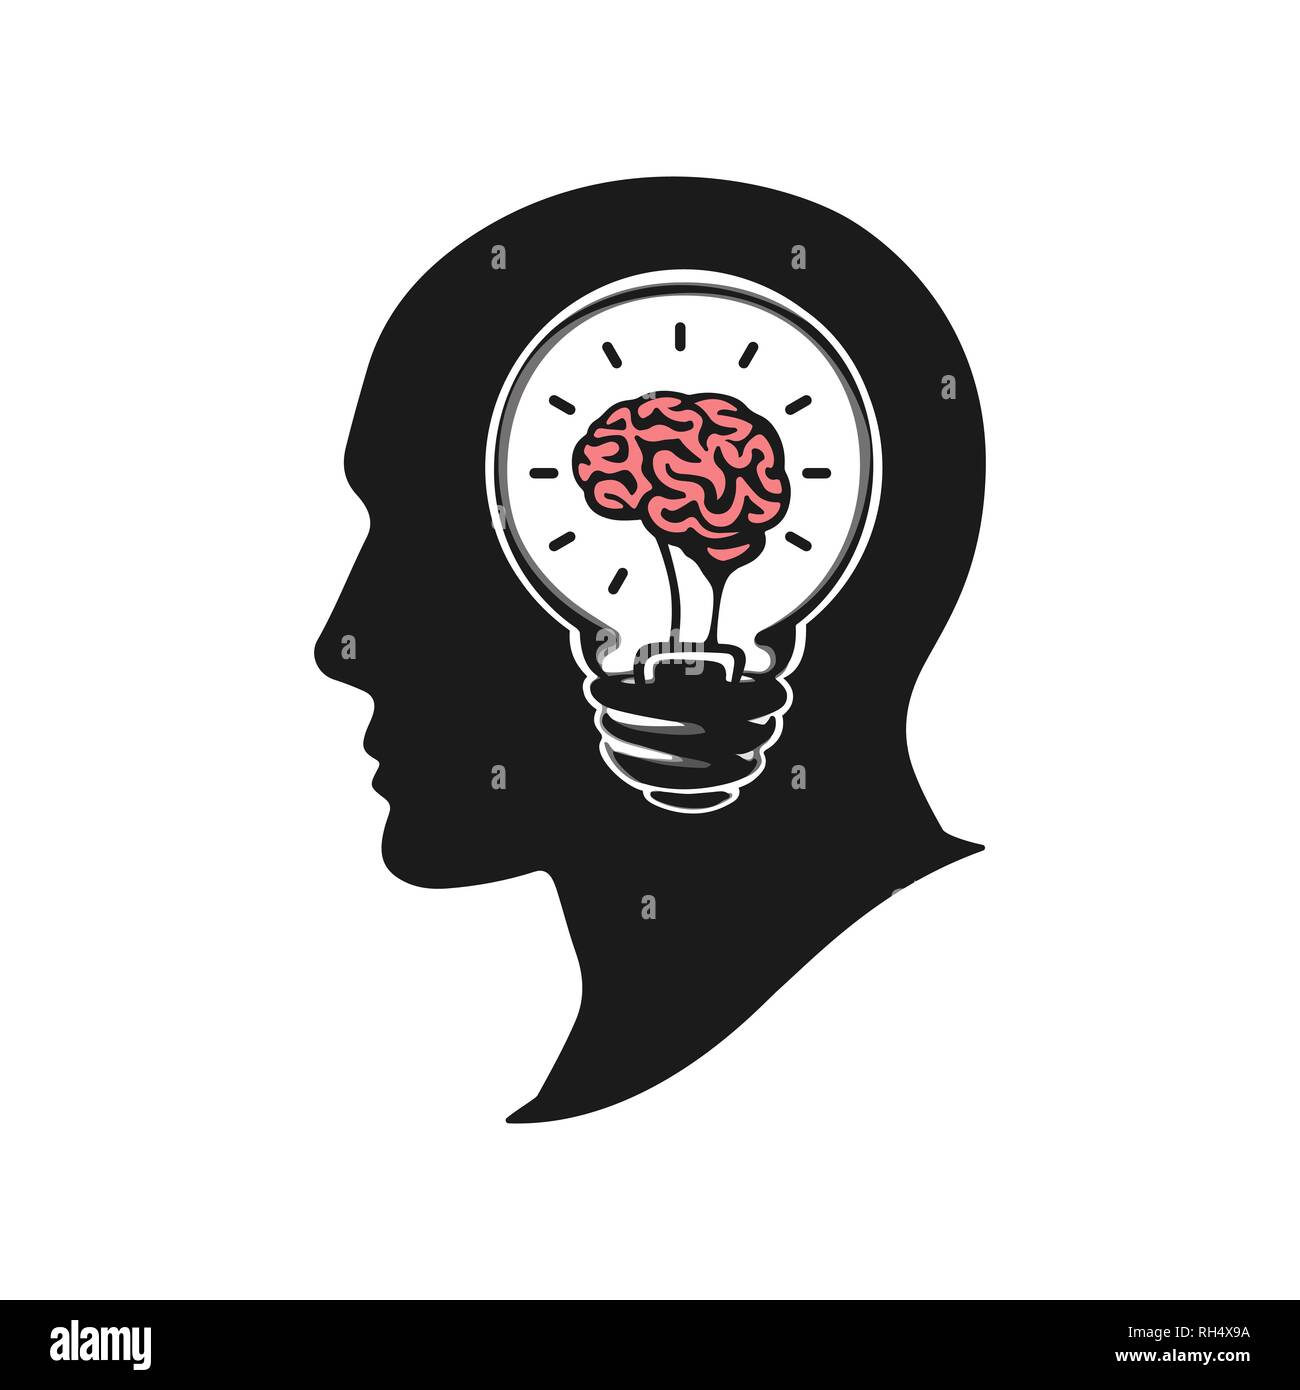 Menschlichen Kopf erstellen einer neuen Idee Vector Illustration. Menschlichen Kopf mit Gehirn. Silhouette menschlichen Kopf mit Glühbirne. Große Idee logo Icon Design Stock Vektor